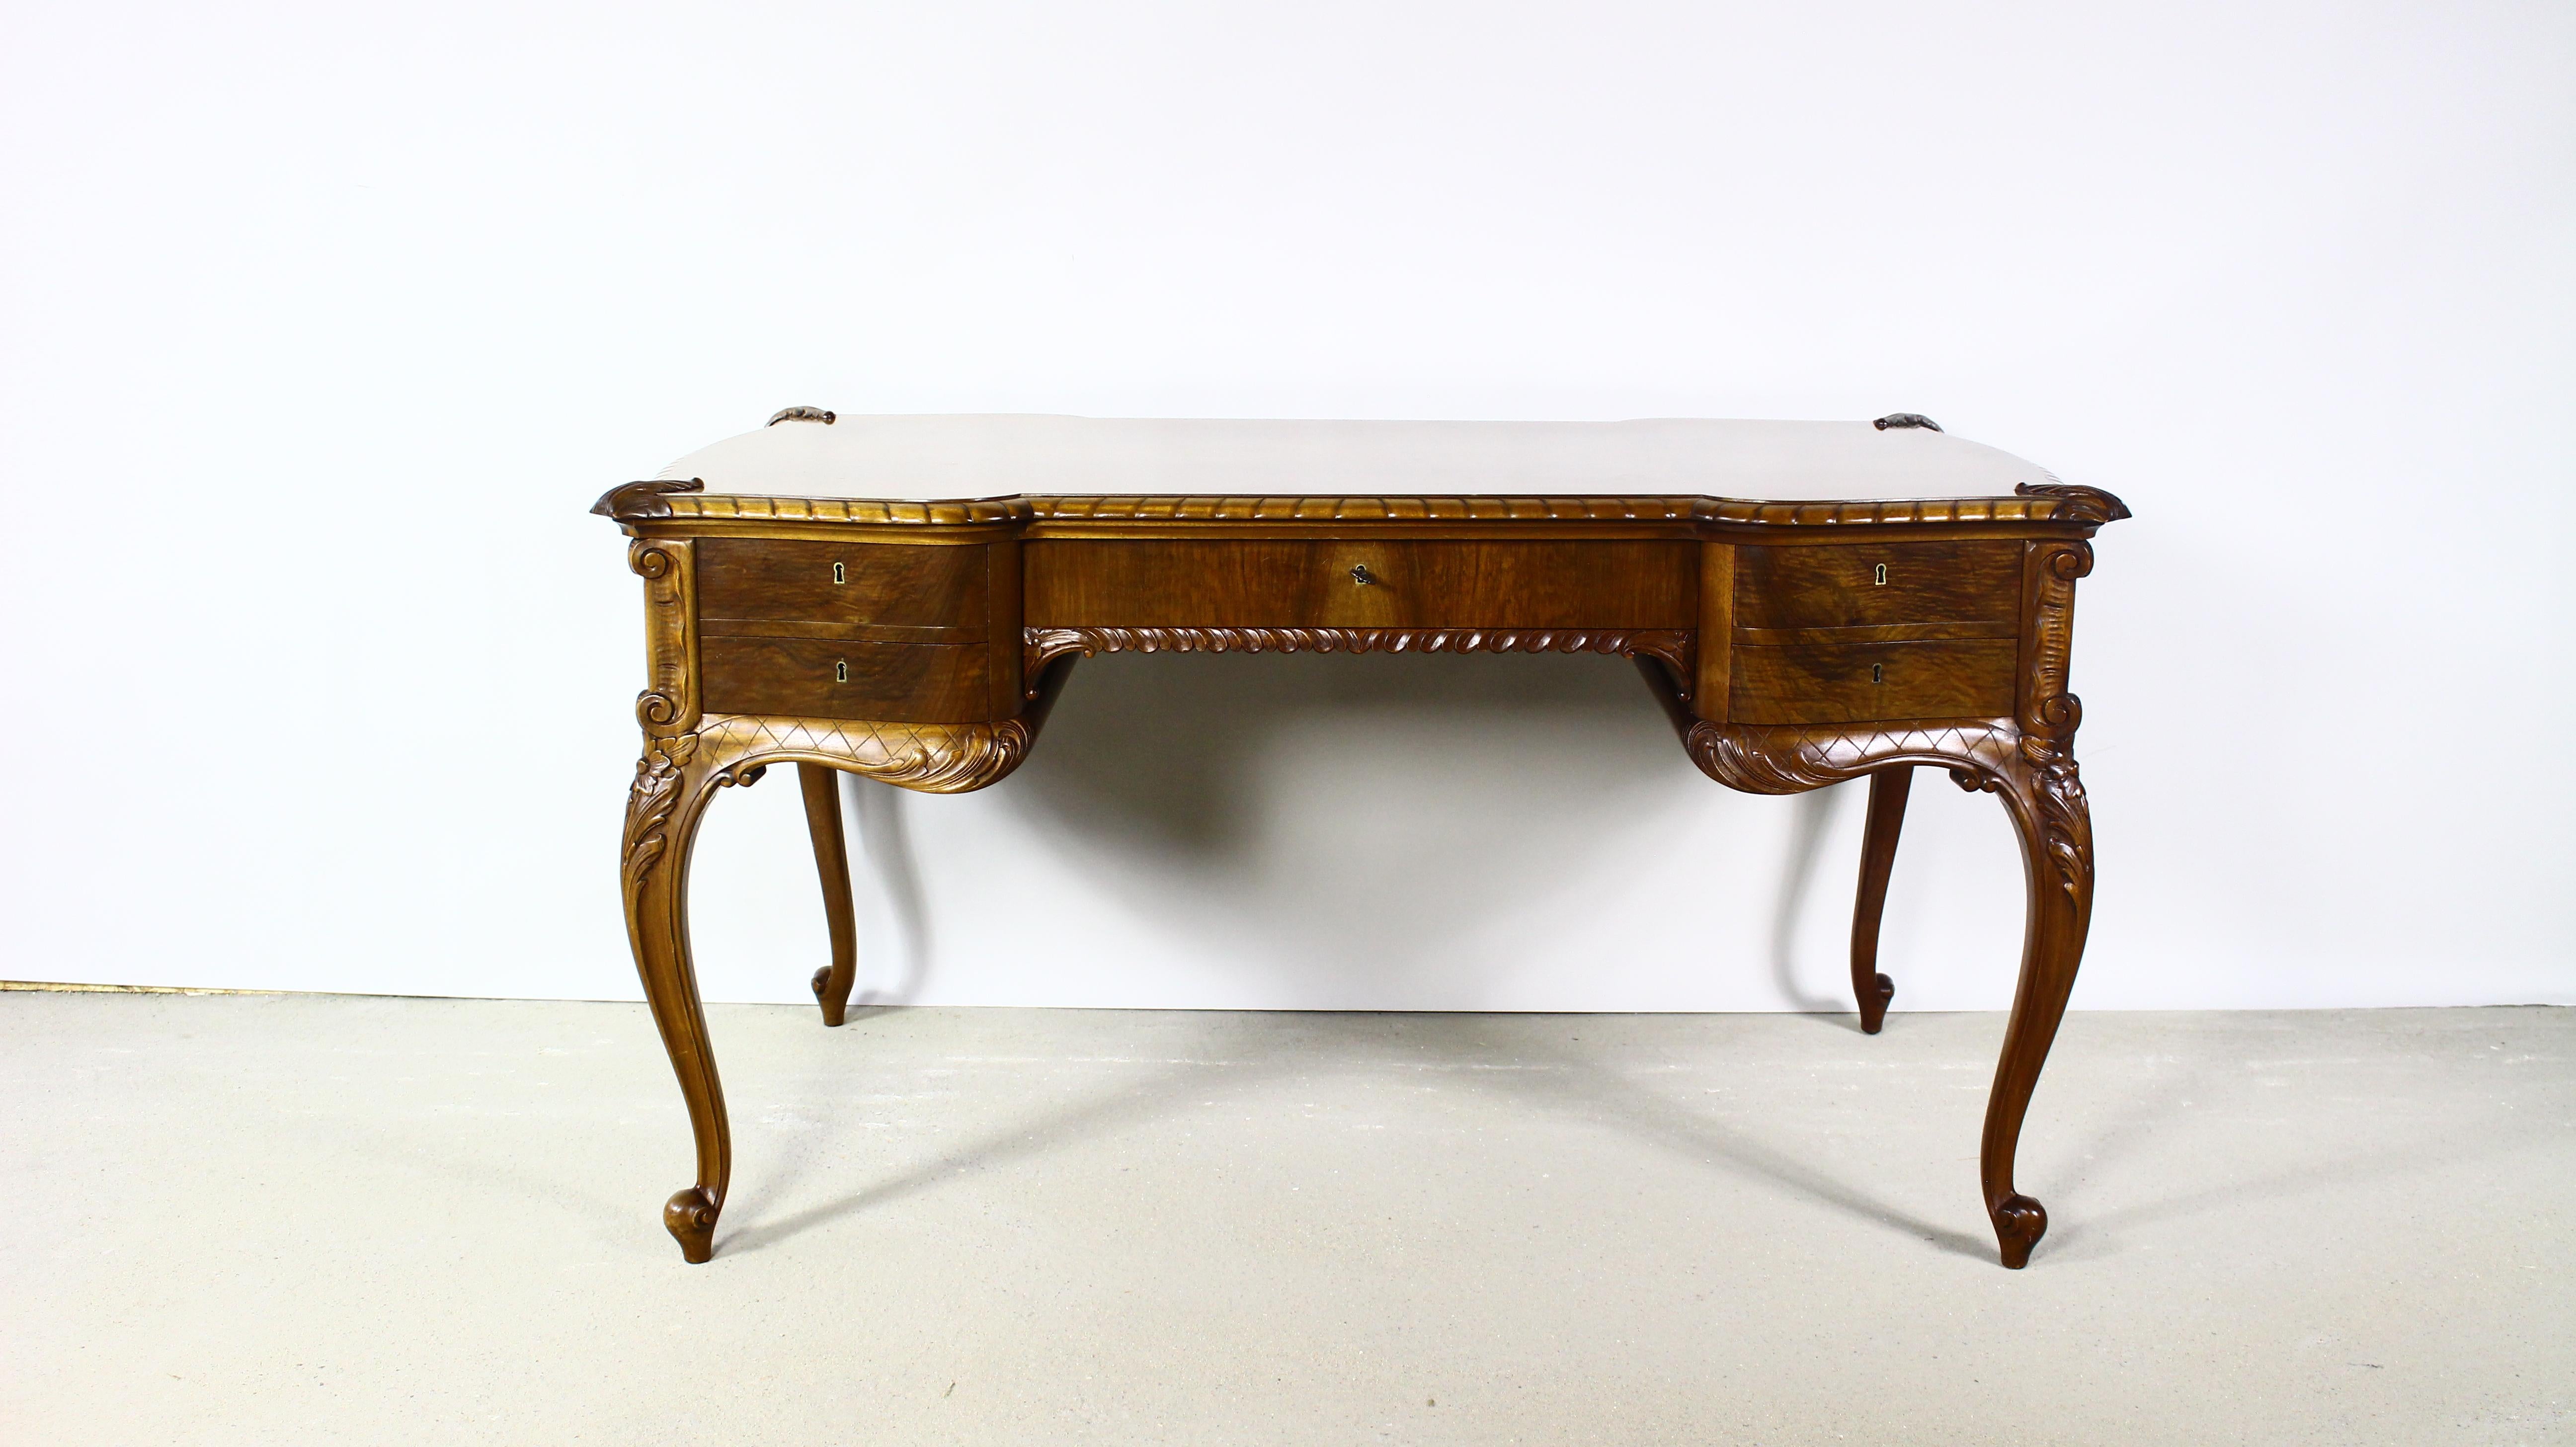 Schöner antiker Schreibtisch im Stil von Louis XV.
Reiche Verzierungen, gerippte Nieten.
Die Ecke ist mit Pflanzenmotiven verziert.
Zweiseitiger Schreibtisch, der z.B. im Arbeitszimmer als freistehendes Möbel verwendet werden kann.
Fünf Schubladen,